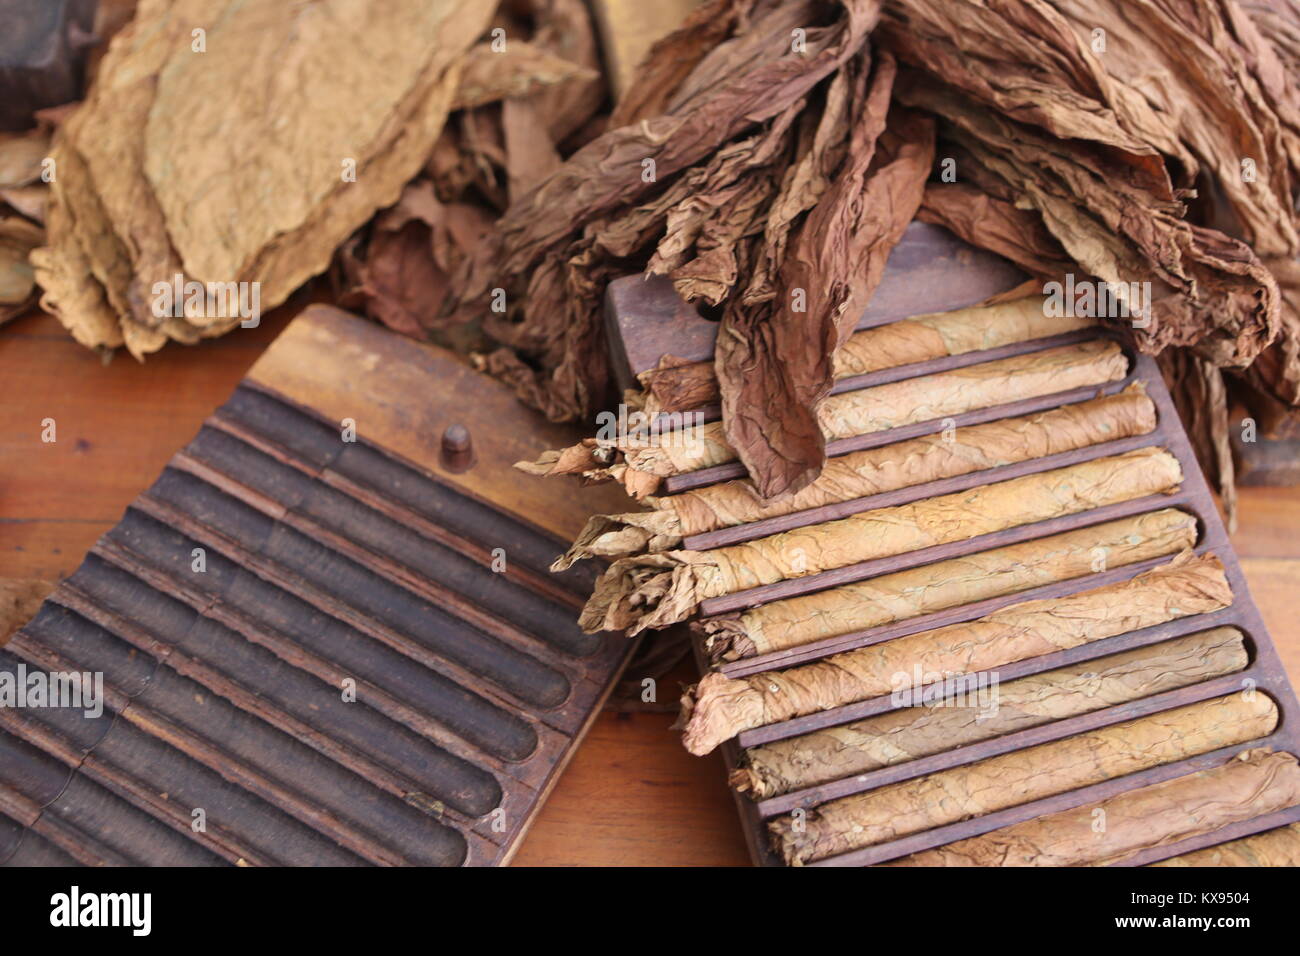 zigarren Herstellung in Cuba -Cigars manufacturing in Cuba Stock Photo